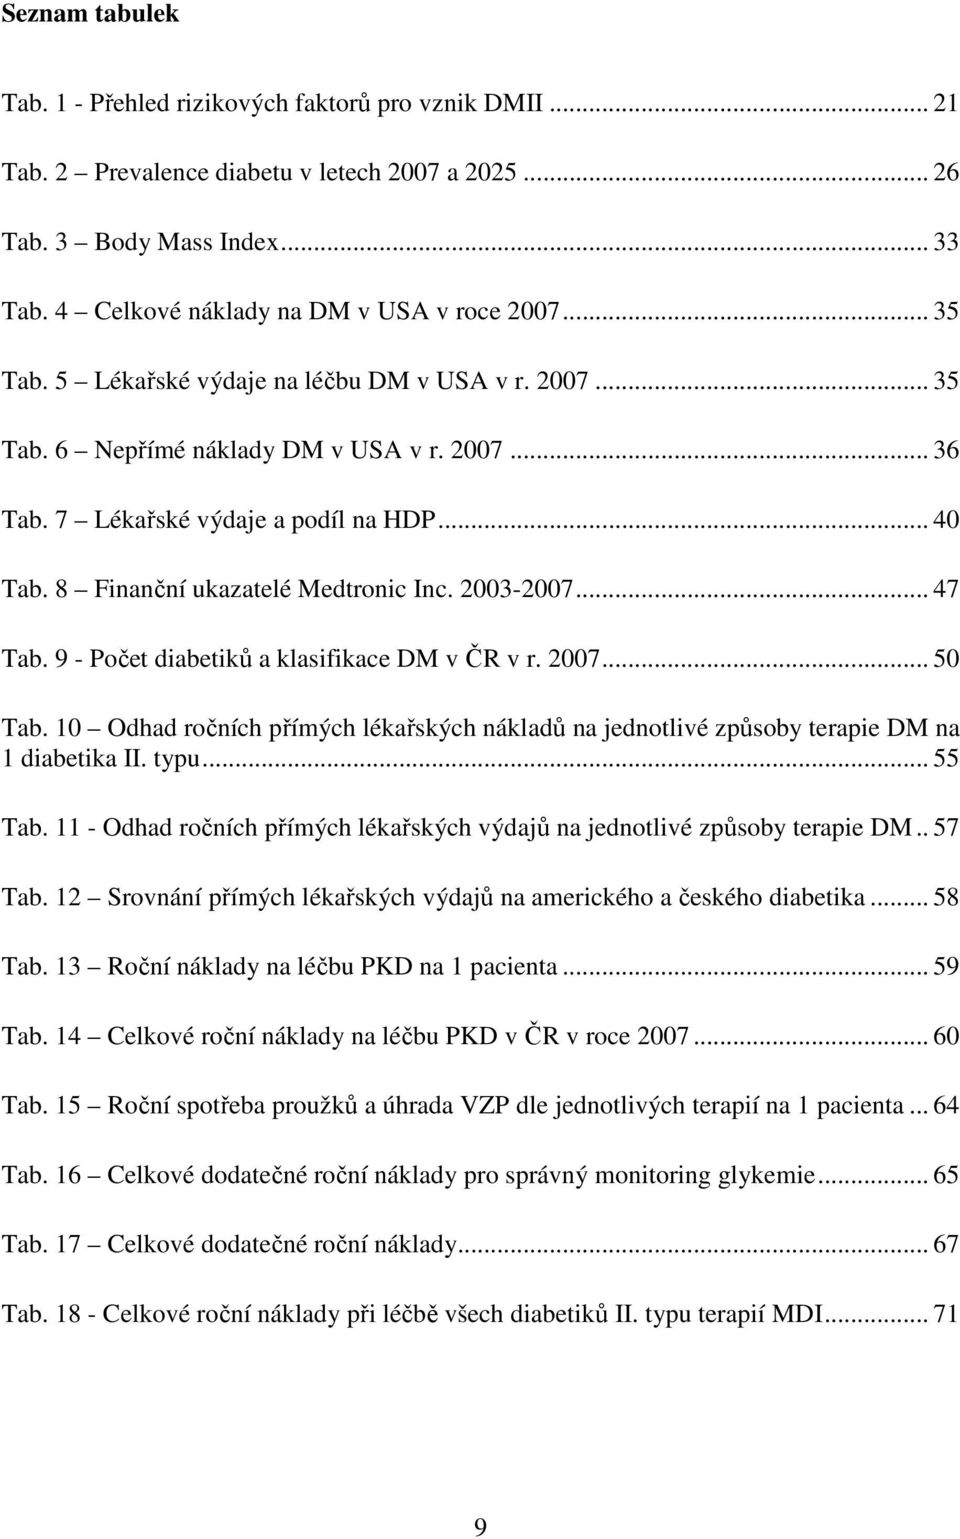 8 Finanční ukazatelé Medtronic Inc. 2003-2007... 47 Tab. 9 - Počet diabetiků a klasifikace DM v ČR v r. 2007... 50 Tab.